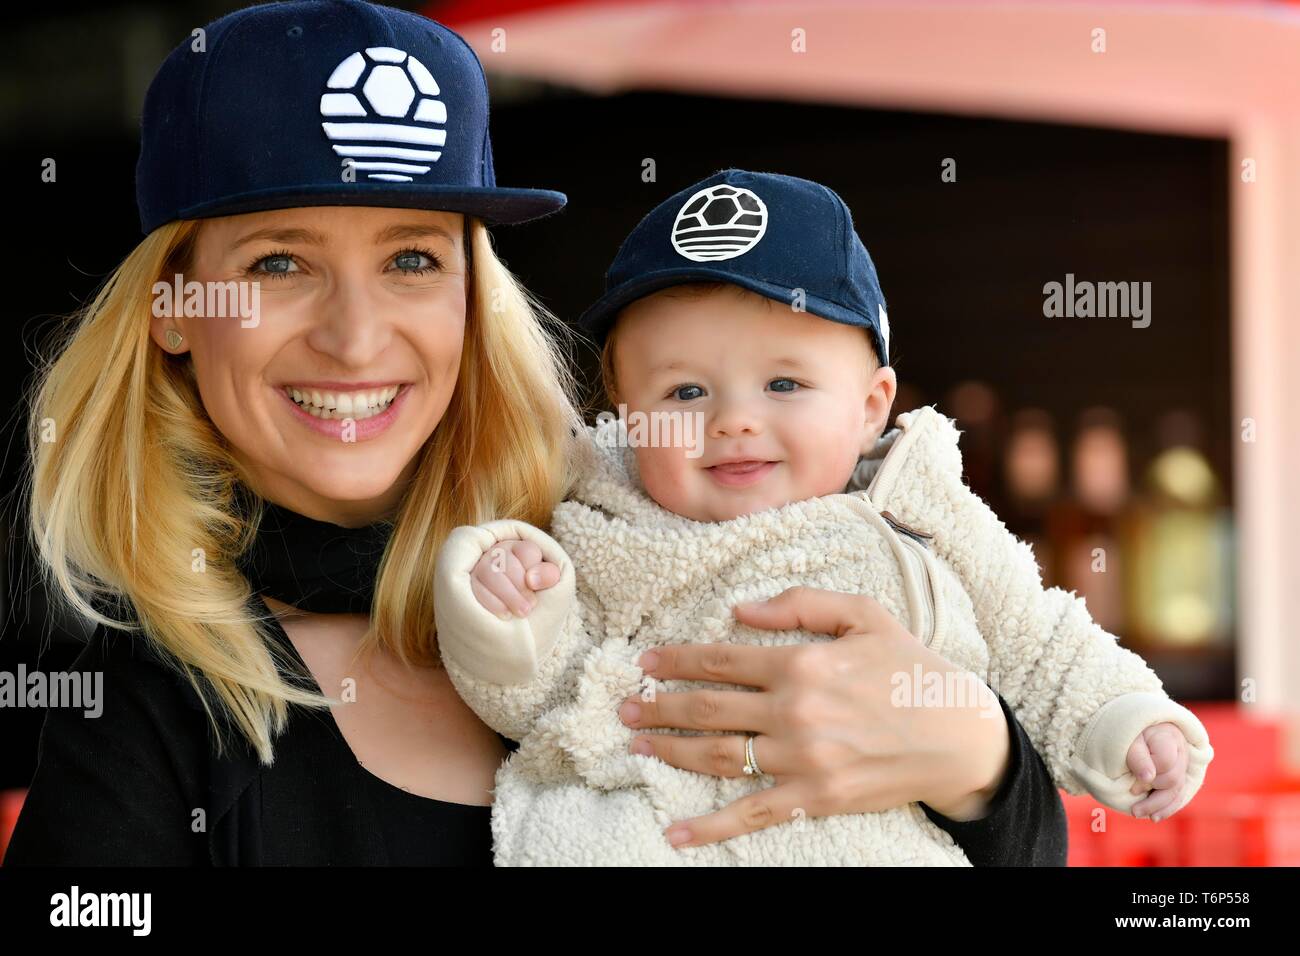 La mère et le bébé, 5 mois, avec le même rire, caps, Baden-Wurttemberg, Allemagne Banque D'Images